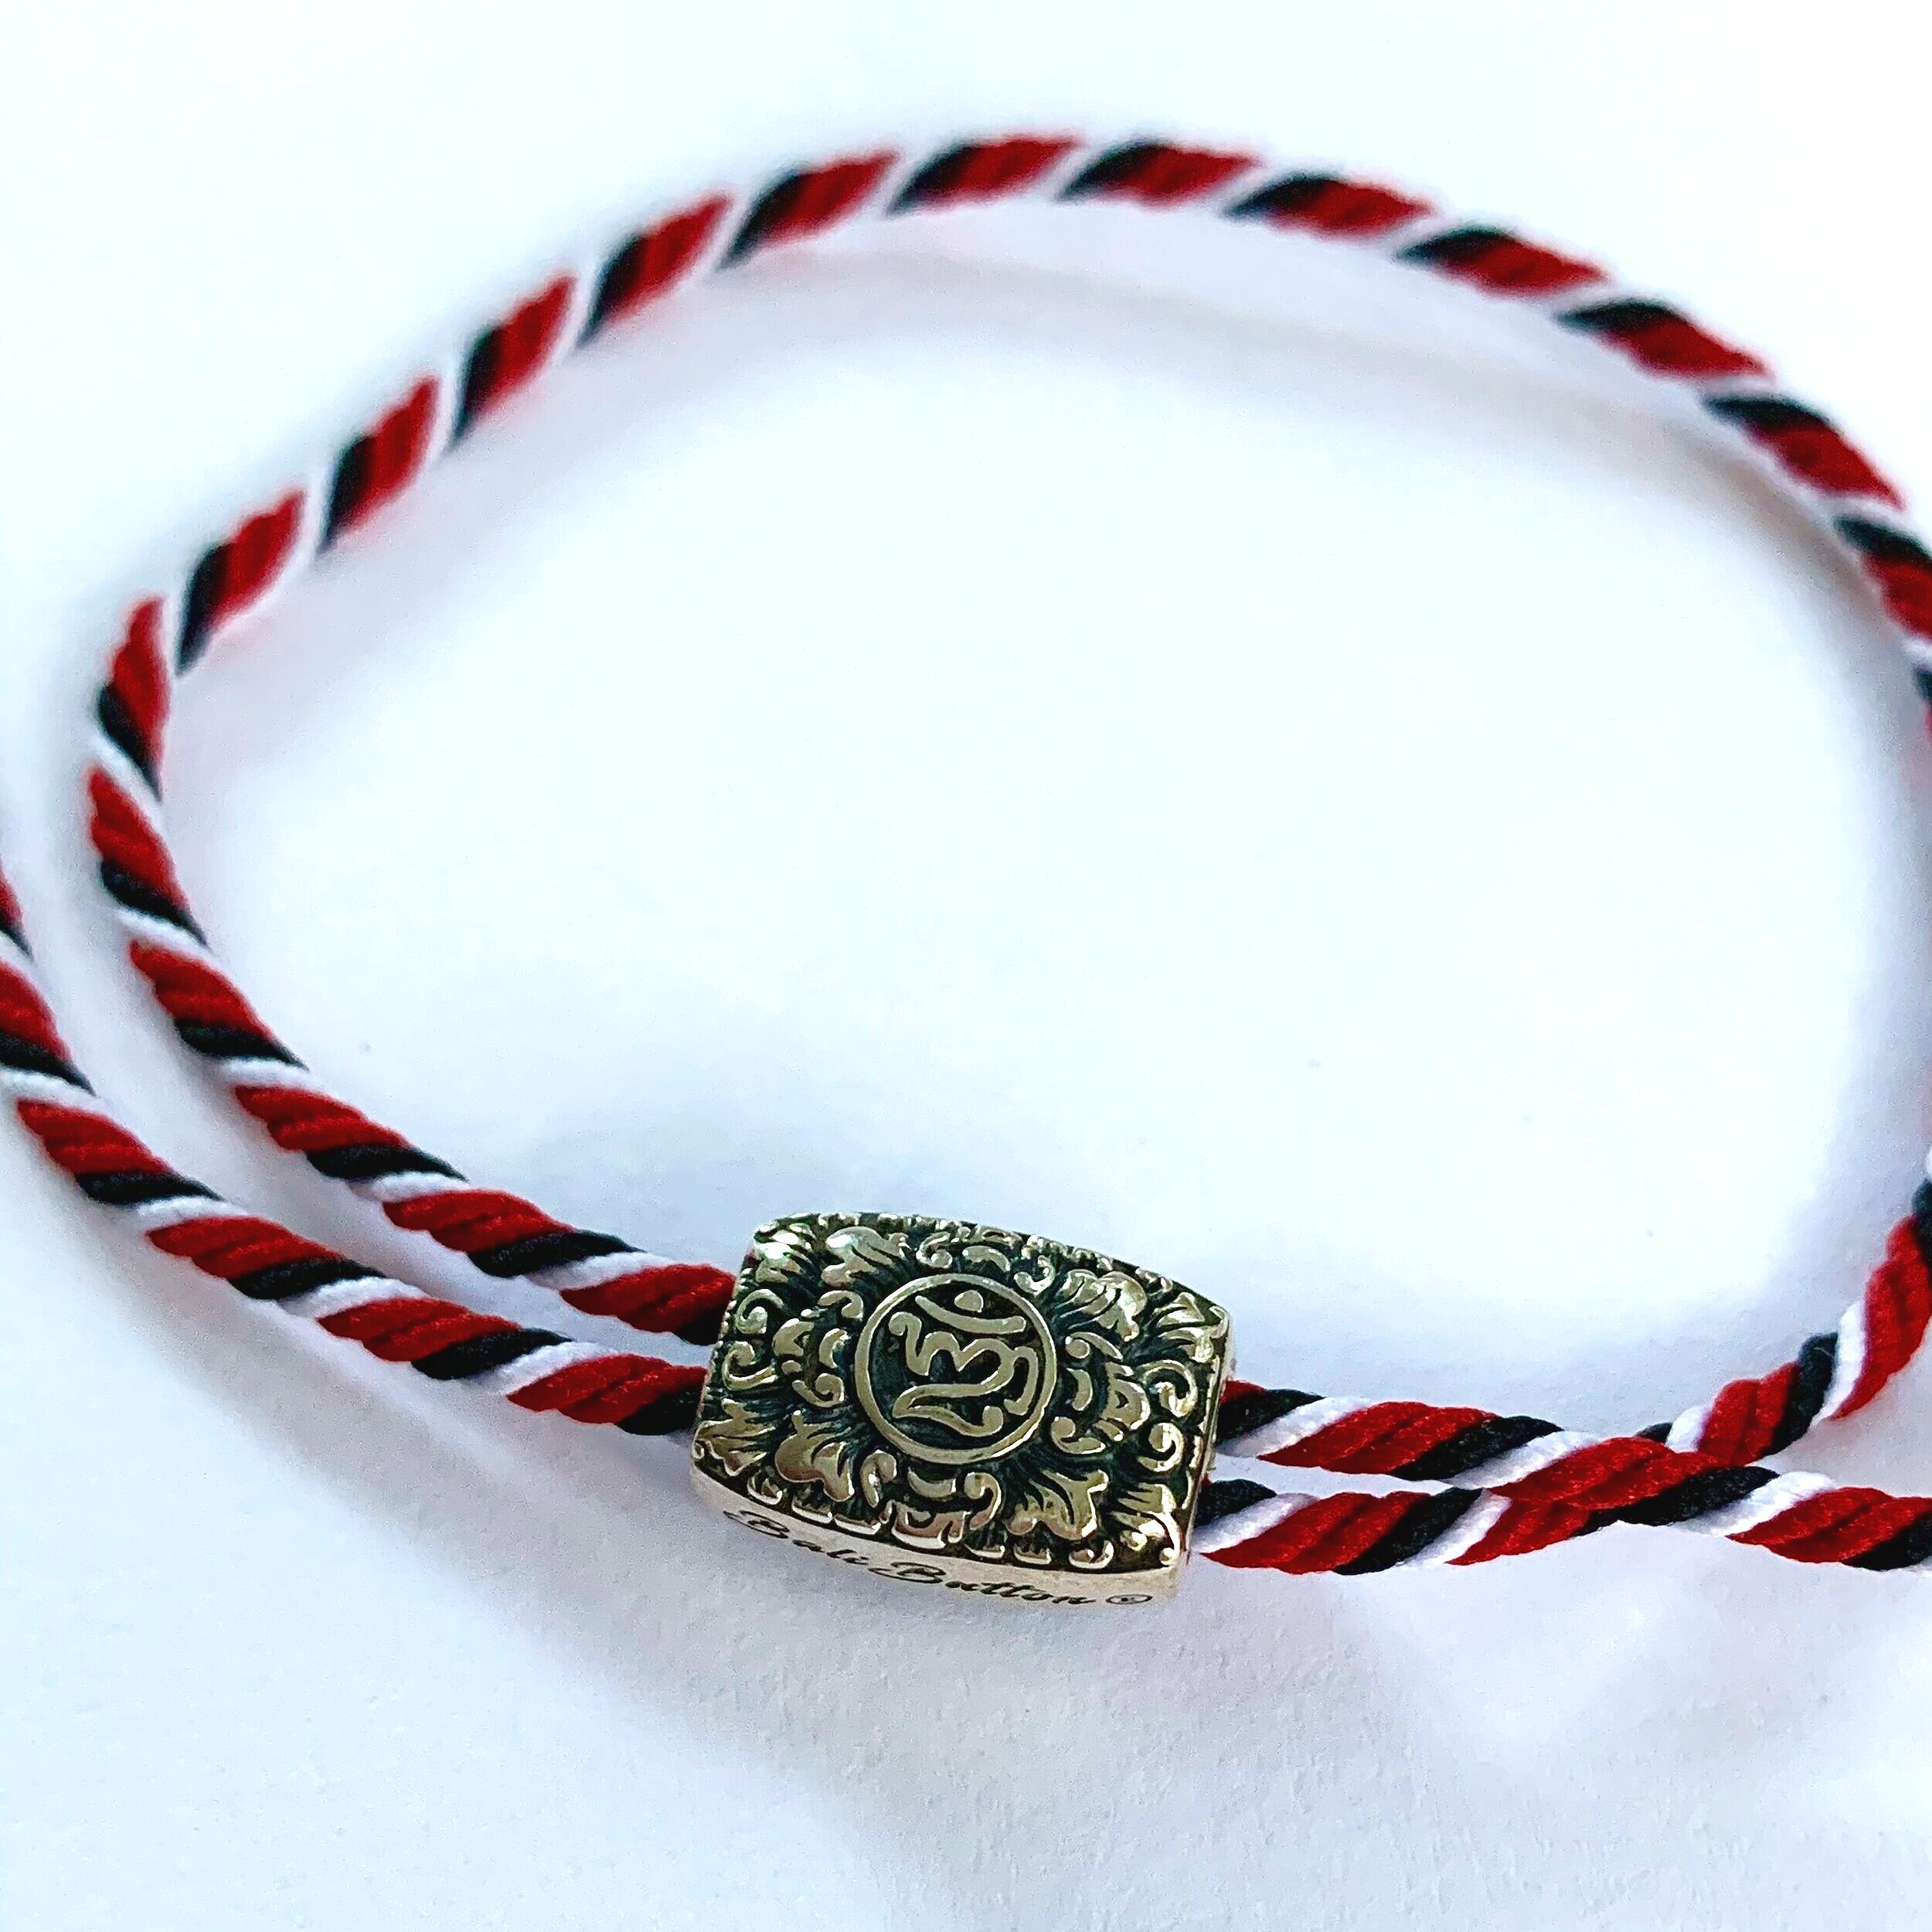 Balinese "OM" Bracelet - $24 USD